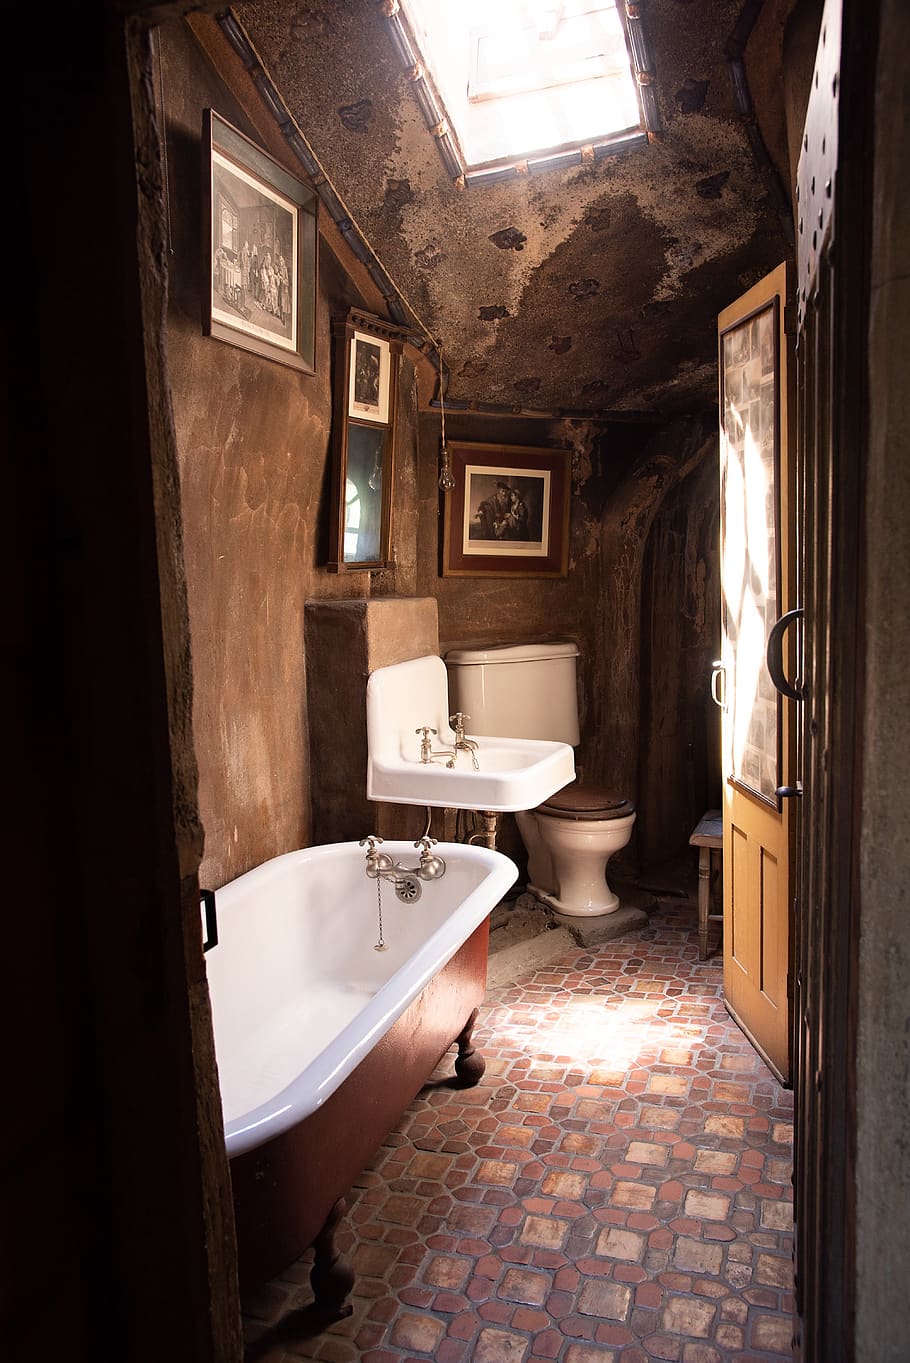 Antique Bathroom House Bath Sink Faucet Tap Toilet Old